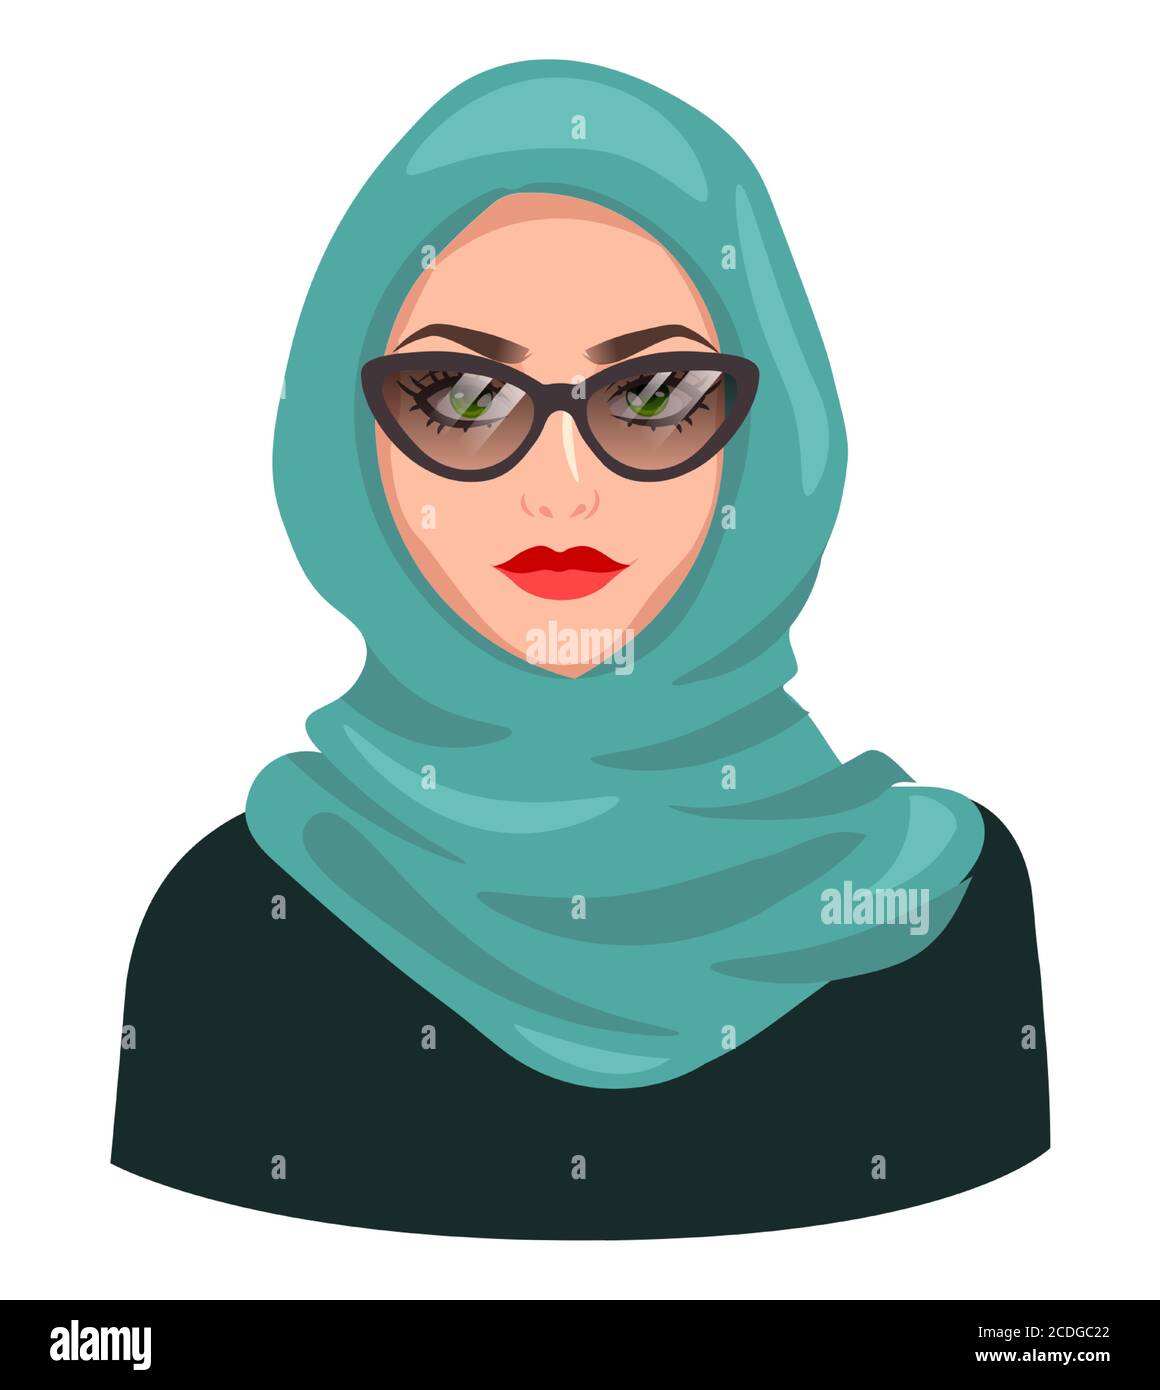 Avatar de femme musulmane, isolé sur blanc. Jeune fille arabe portant le hijab et des lunettes de soleil. Dessin animé portrait de femme, illustration vectorielle plate Illustration de Vecteur